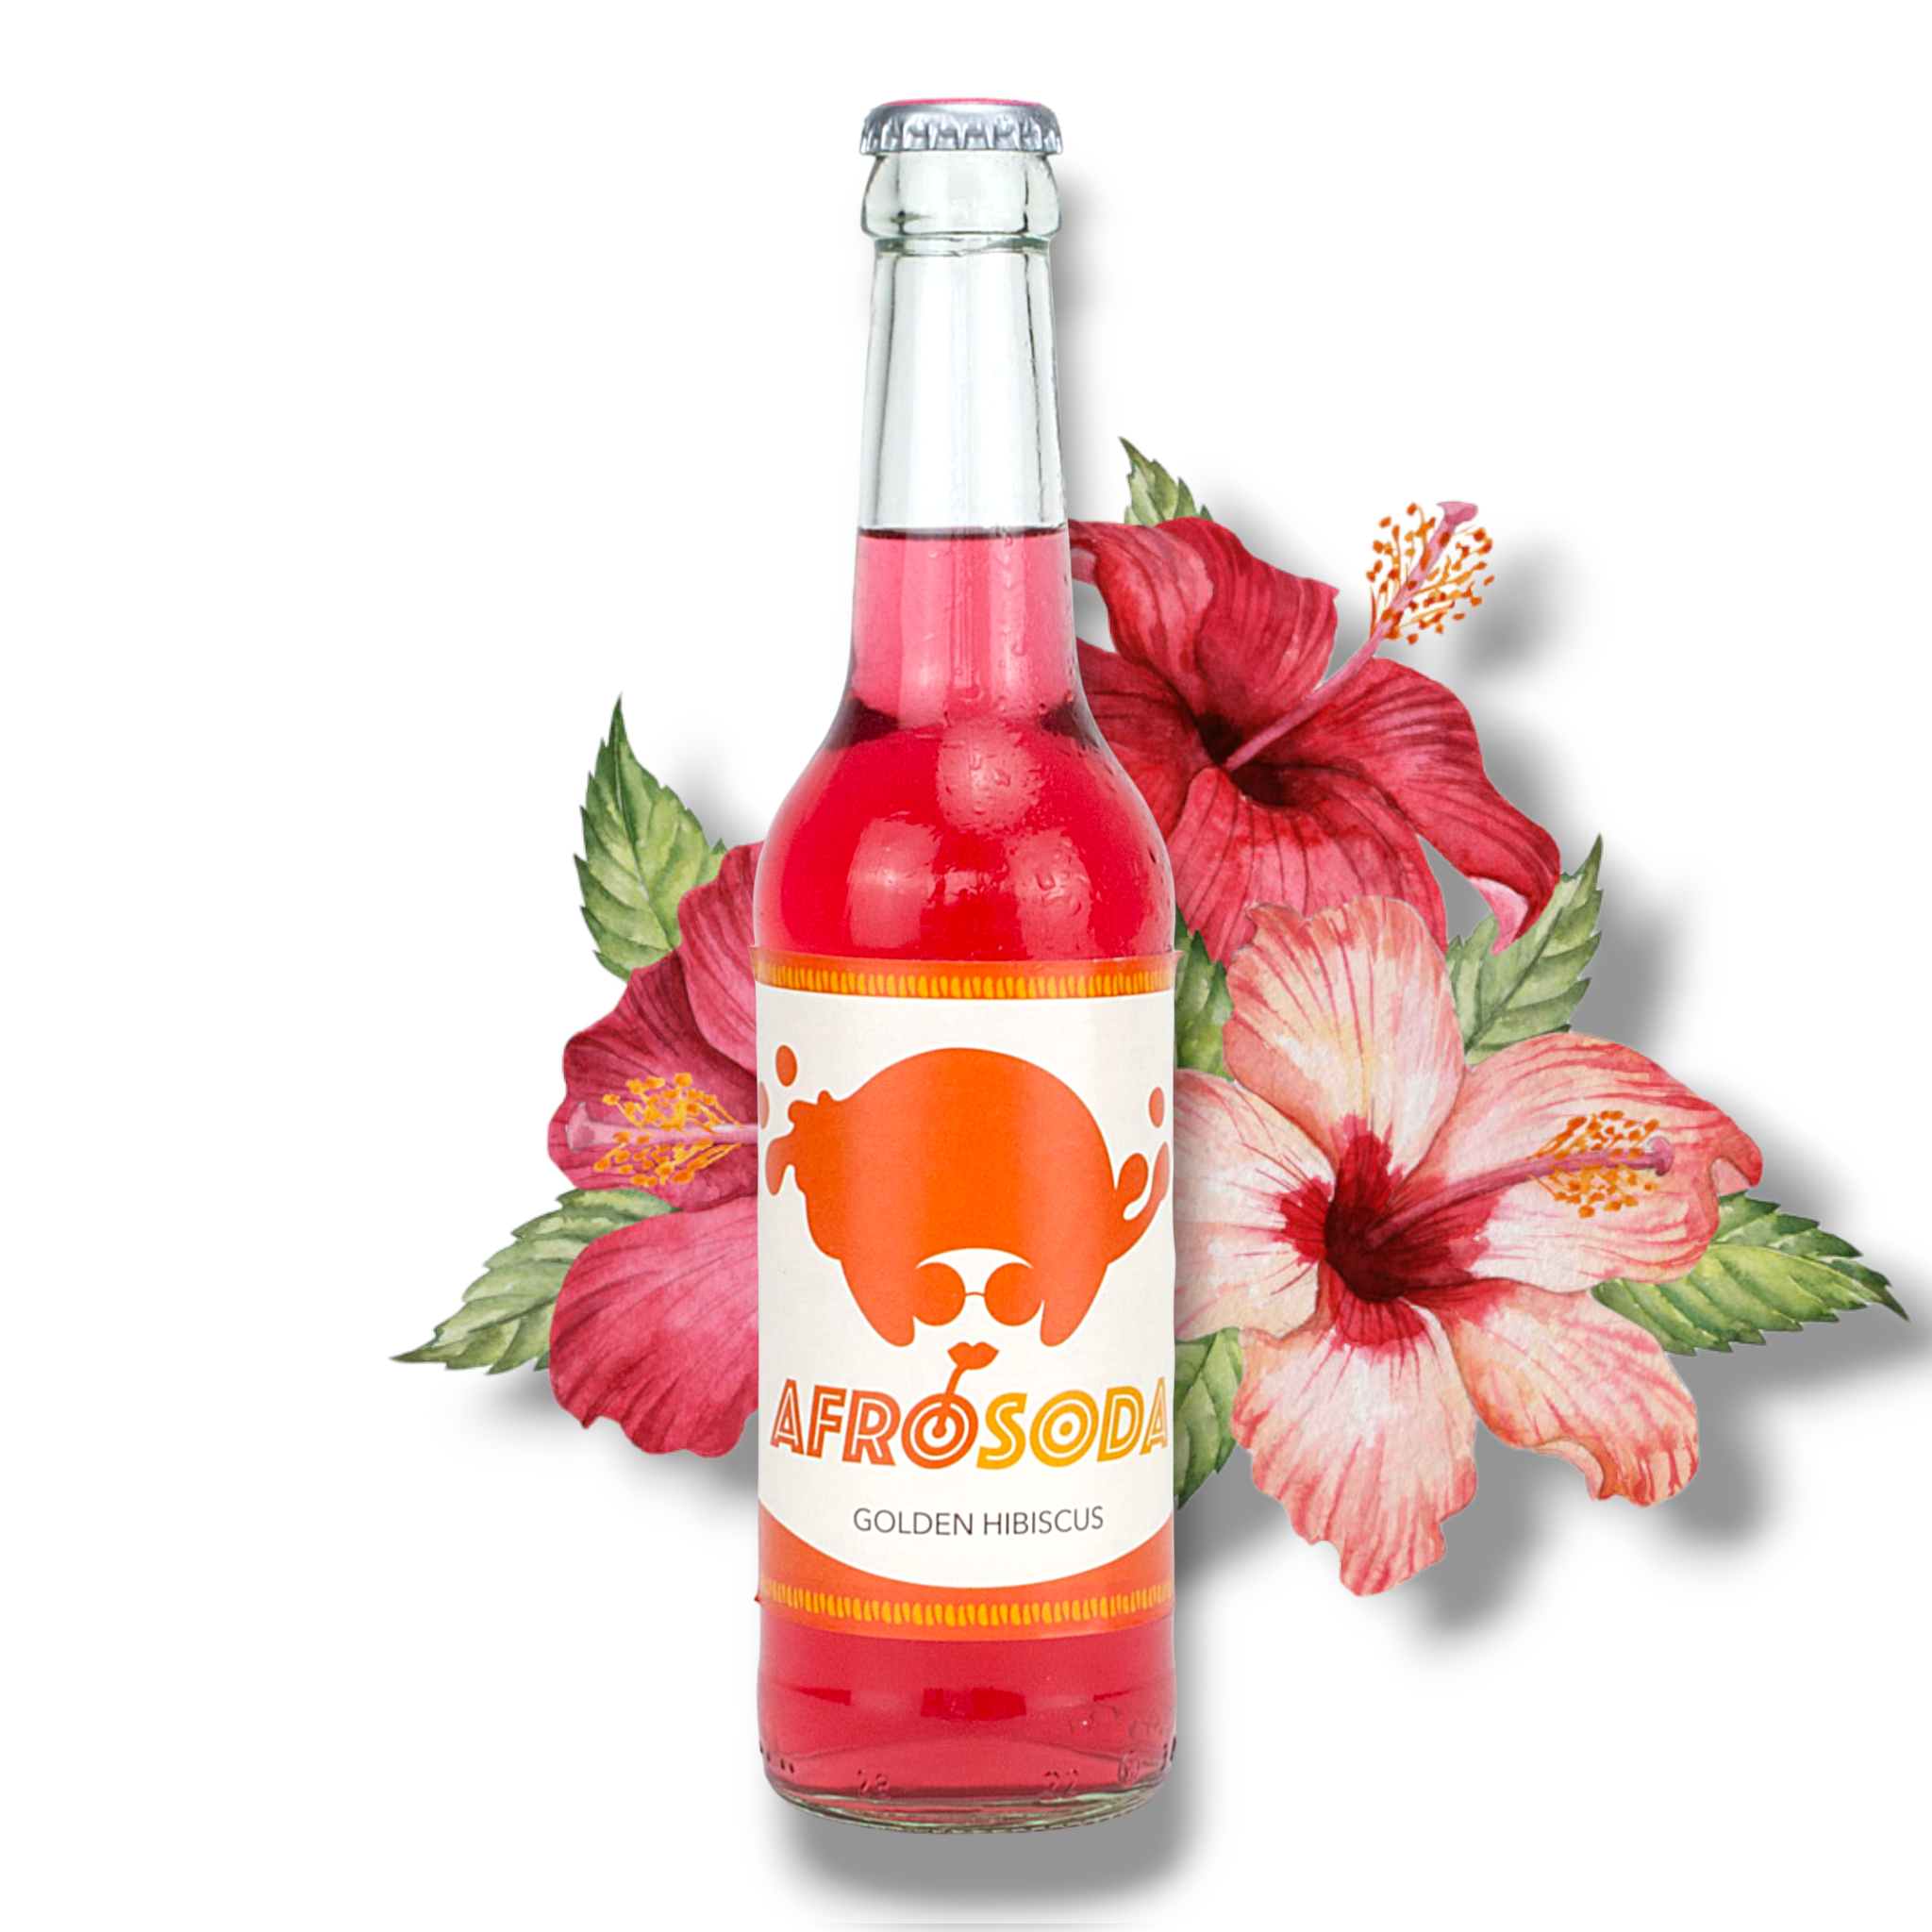 Neu! Afrosoda Golden Hibiscus 0,33l- Taste The Beat - Erfrischungsgetränk mit Hibiscus Ingwergeschmack